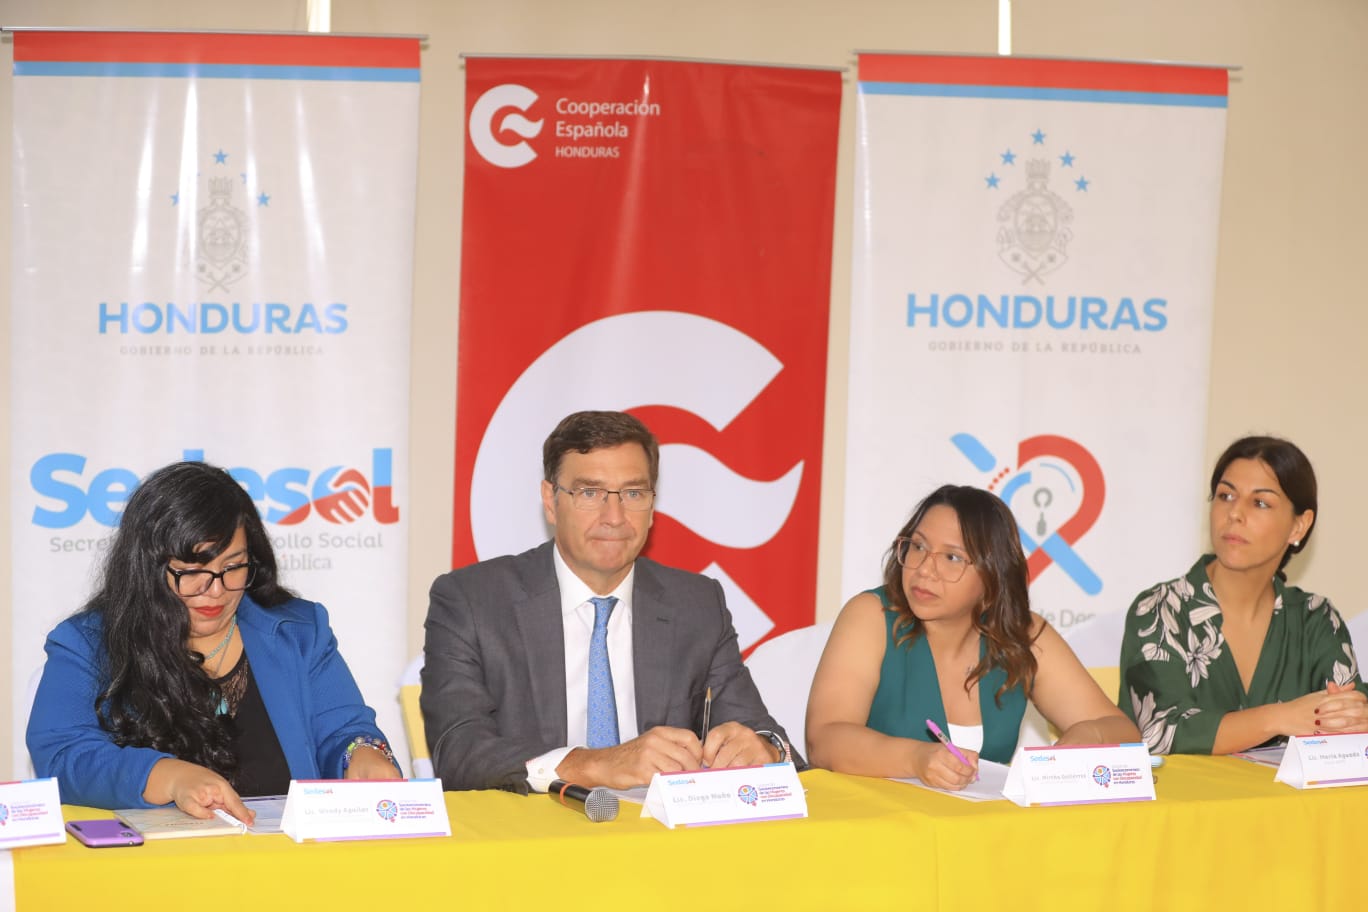 La SEDESOL y AECID contribuyen al desarrollo socioeconómico de mujeres con discapacidad en Honduras